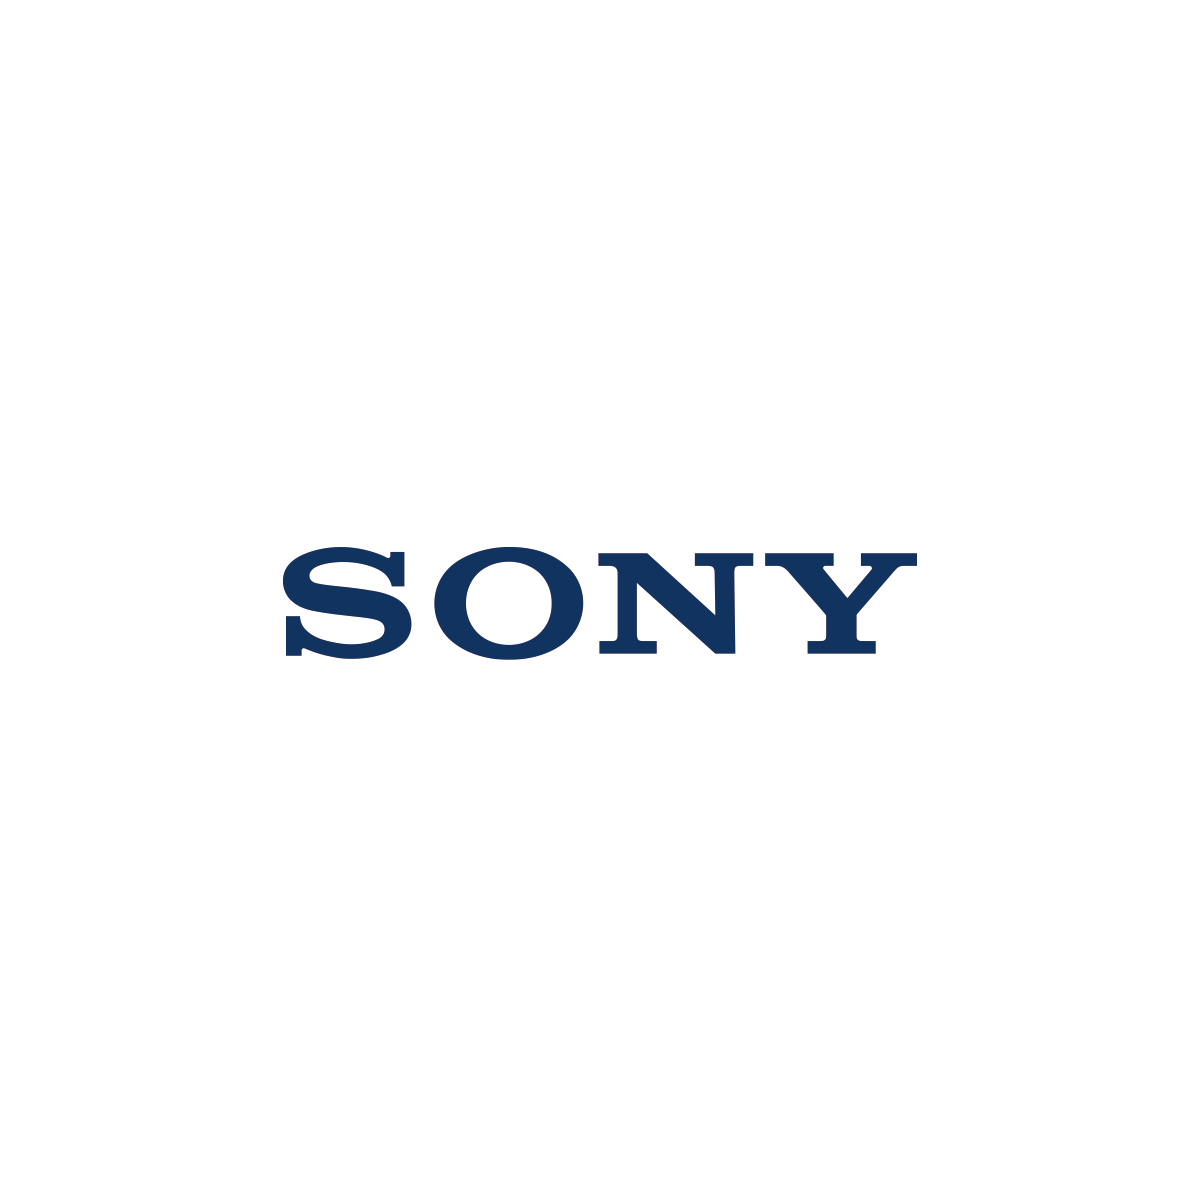 ソニー、米パラマウント買収の巨額提示…4兆円